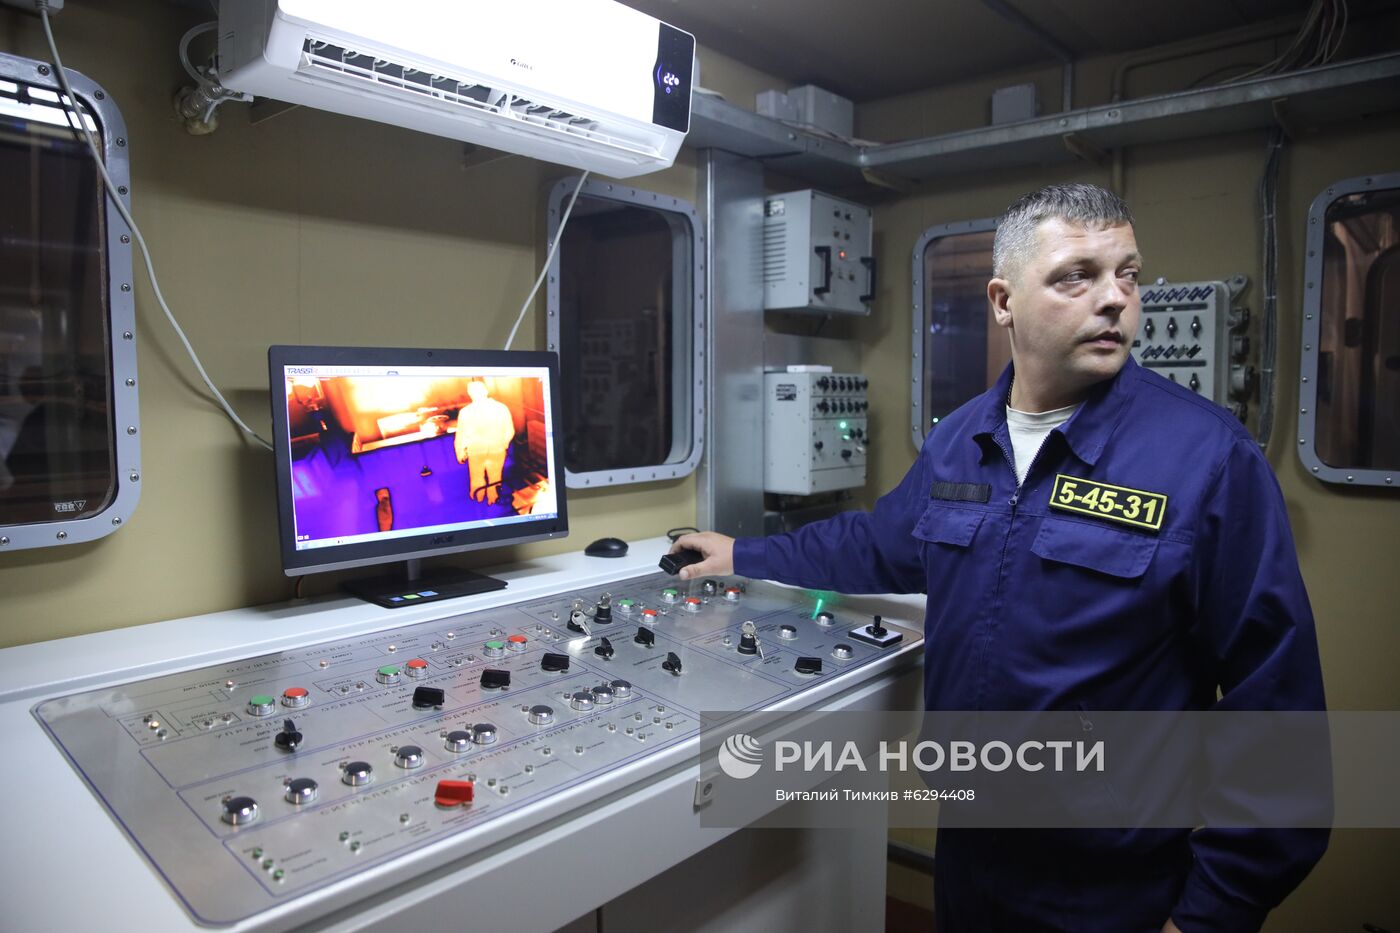 Презентация новых учебно-тренировочных комплексов Черноморского флота